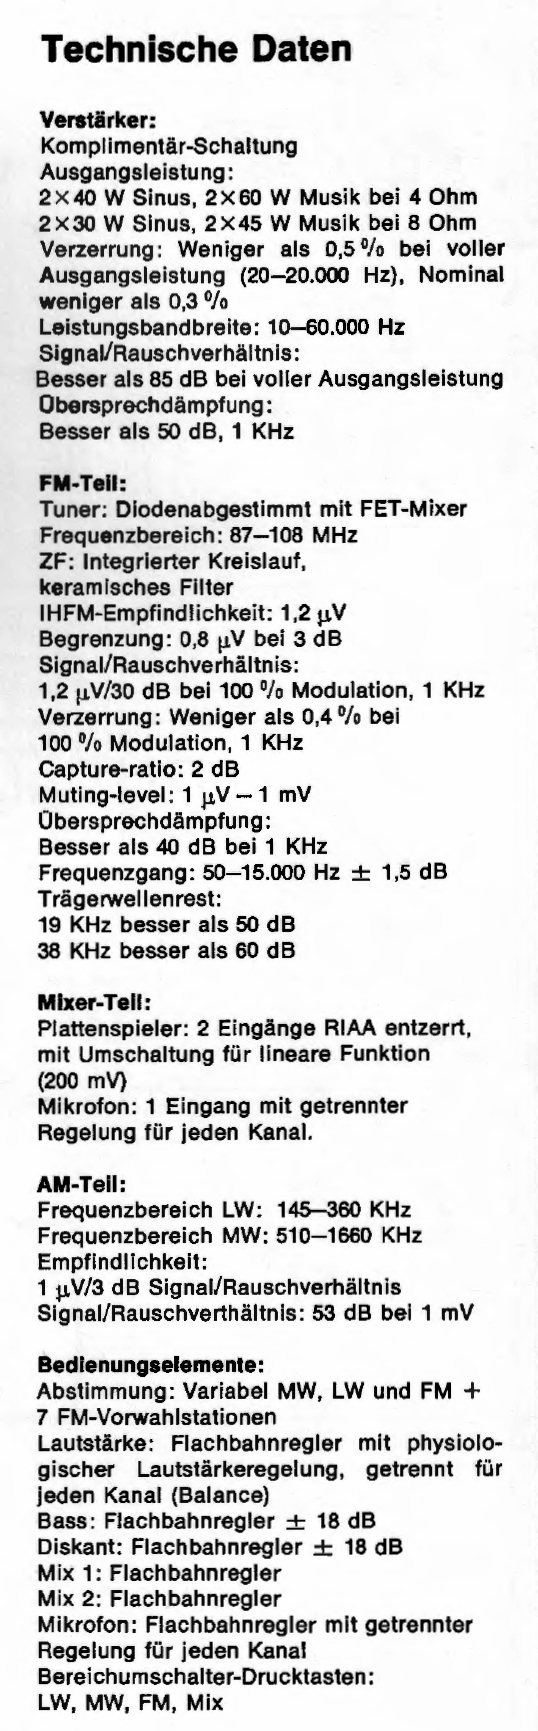 Scan-Dyna 2400-Daten-1973.jpg